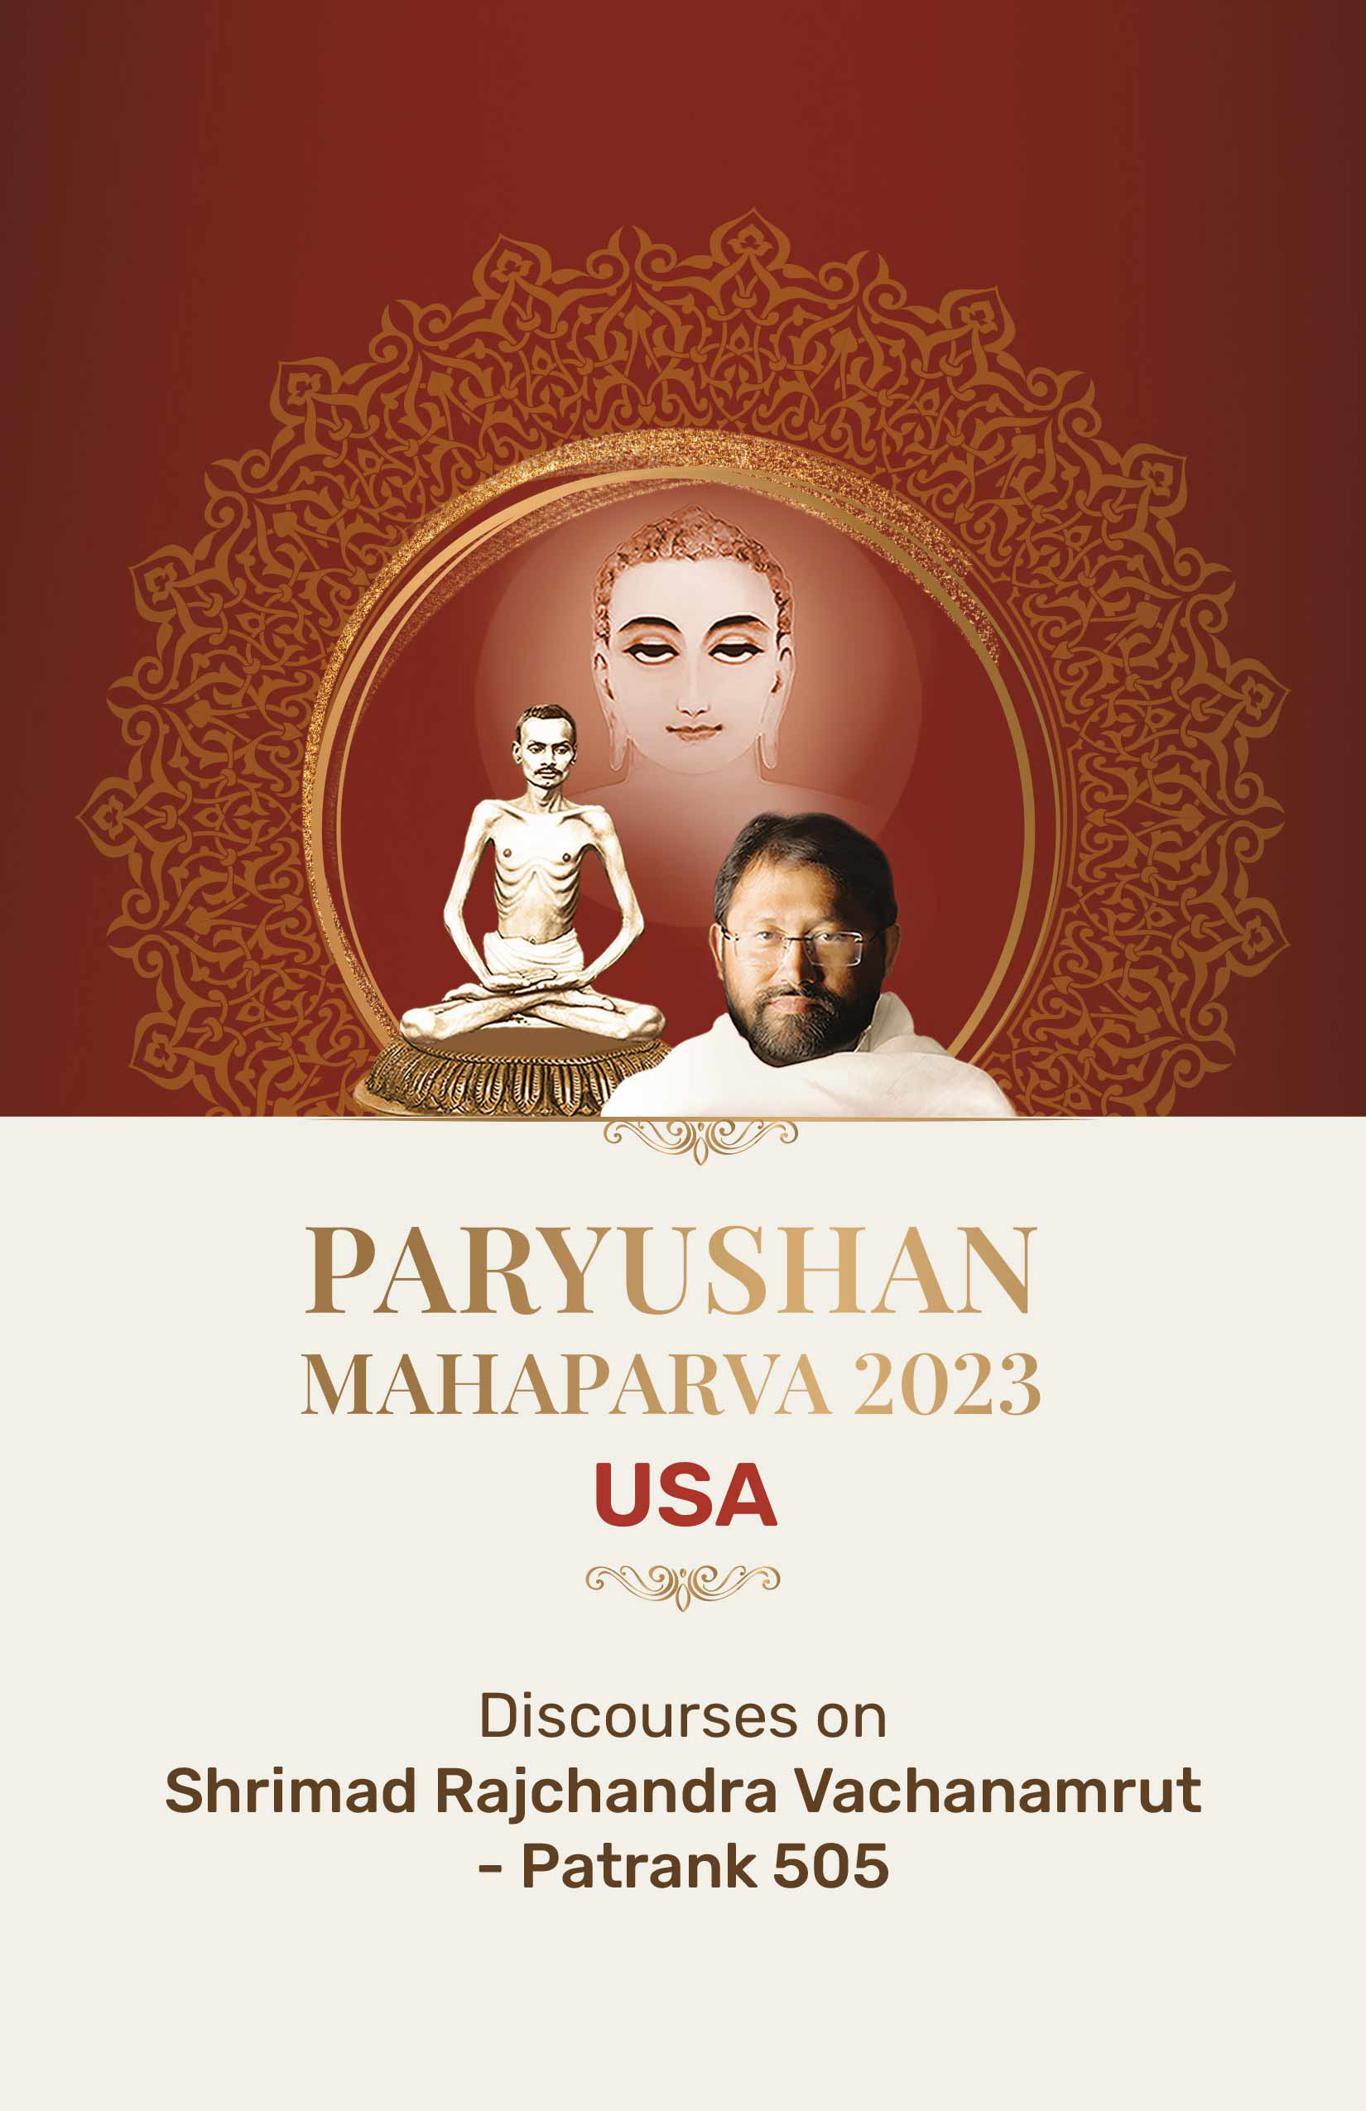 Paryushan Mahaparva 2023 - USA